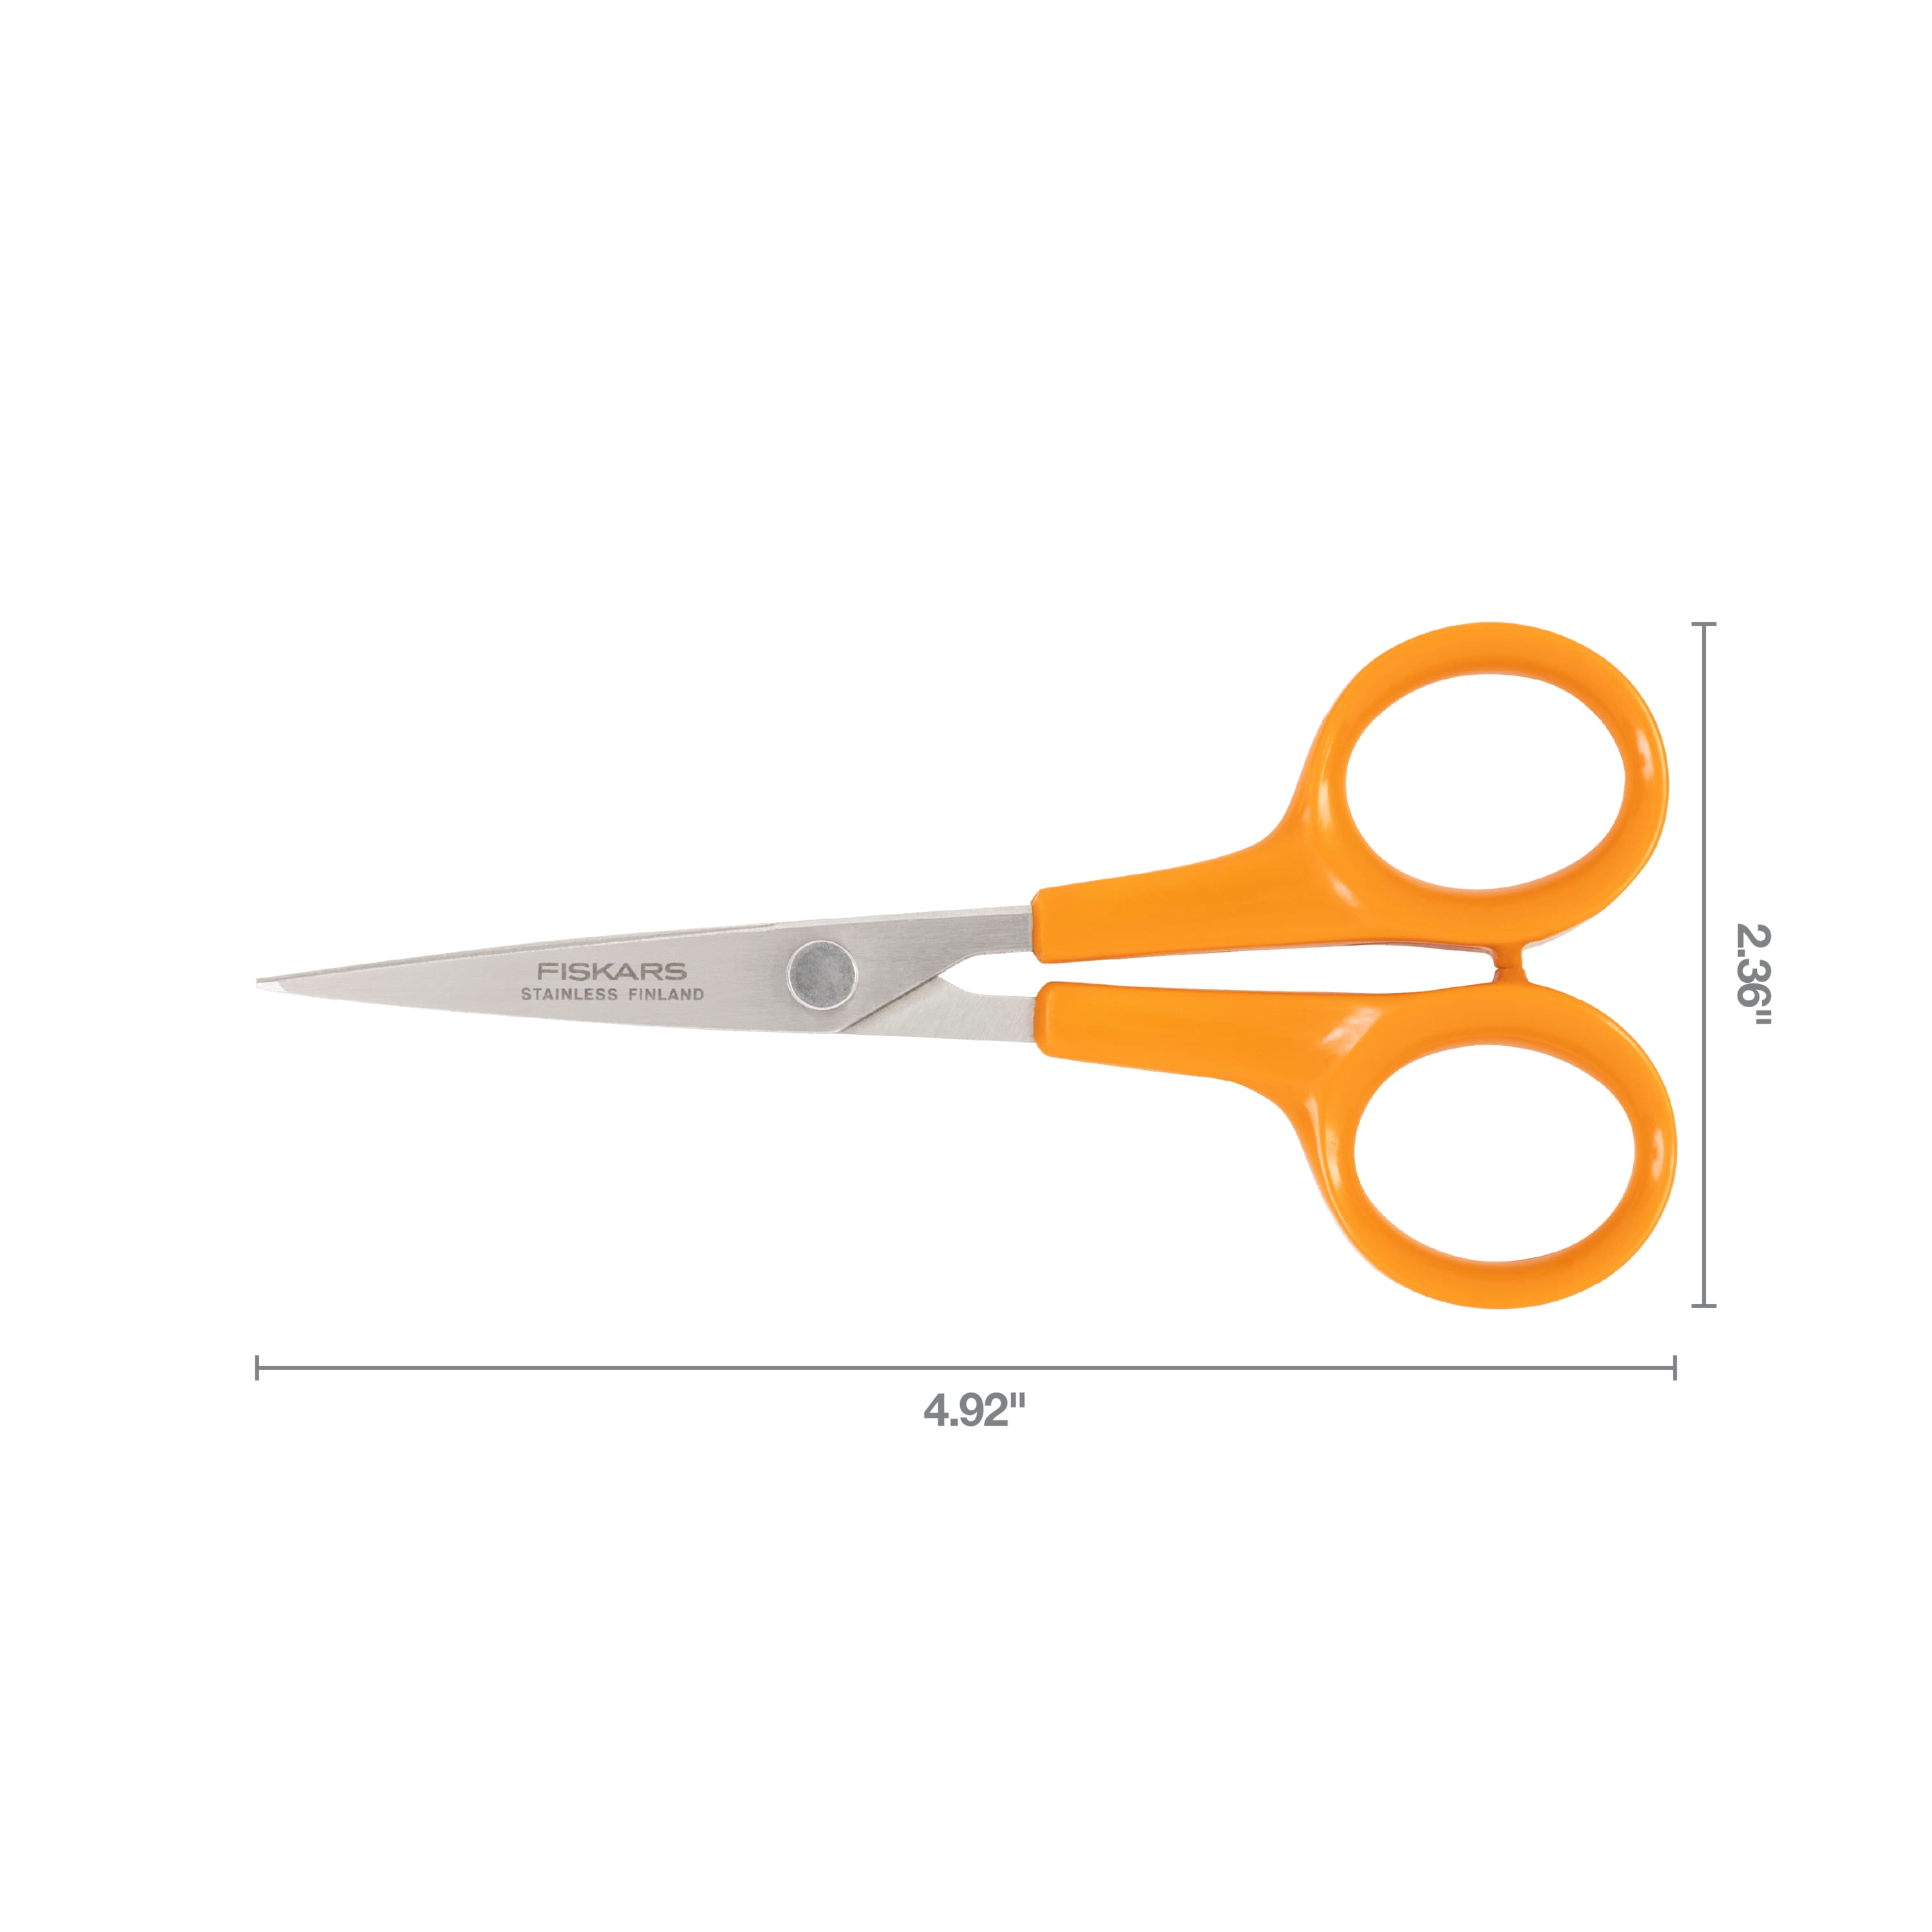 Fiskars&#xAE; Finnish No. 5 Stitcher Scissors